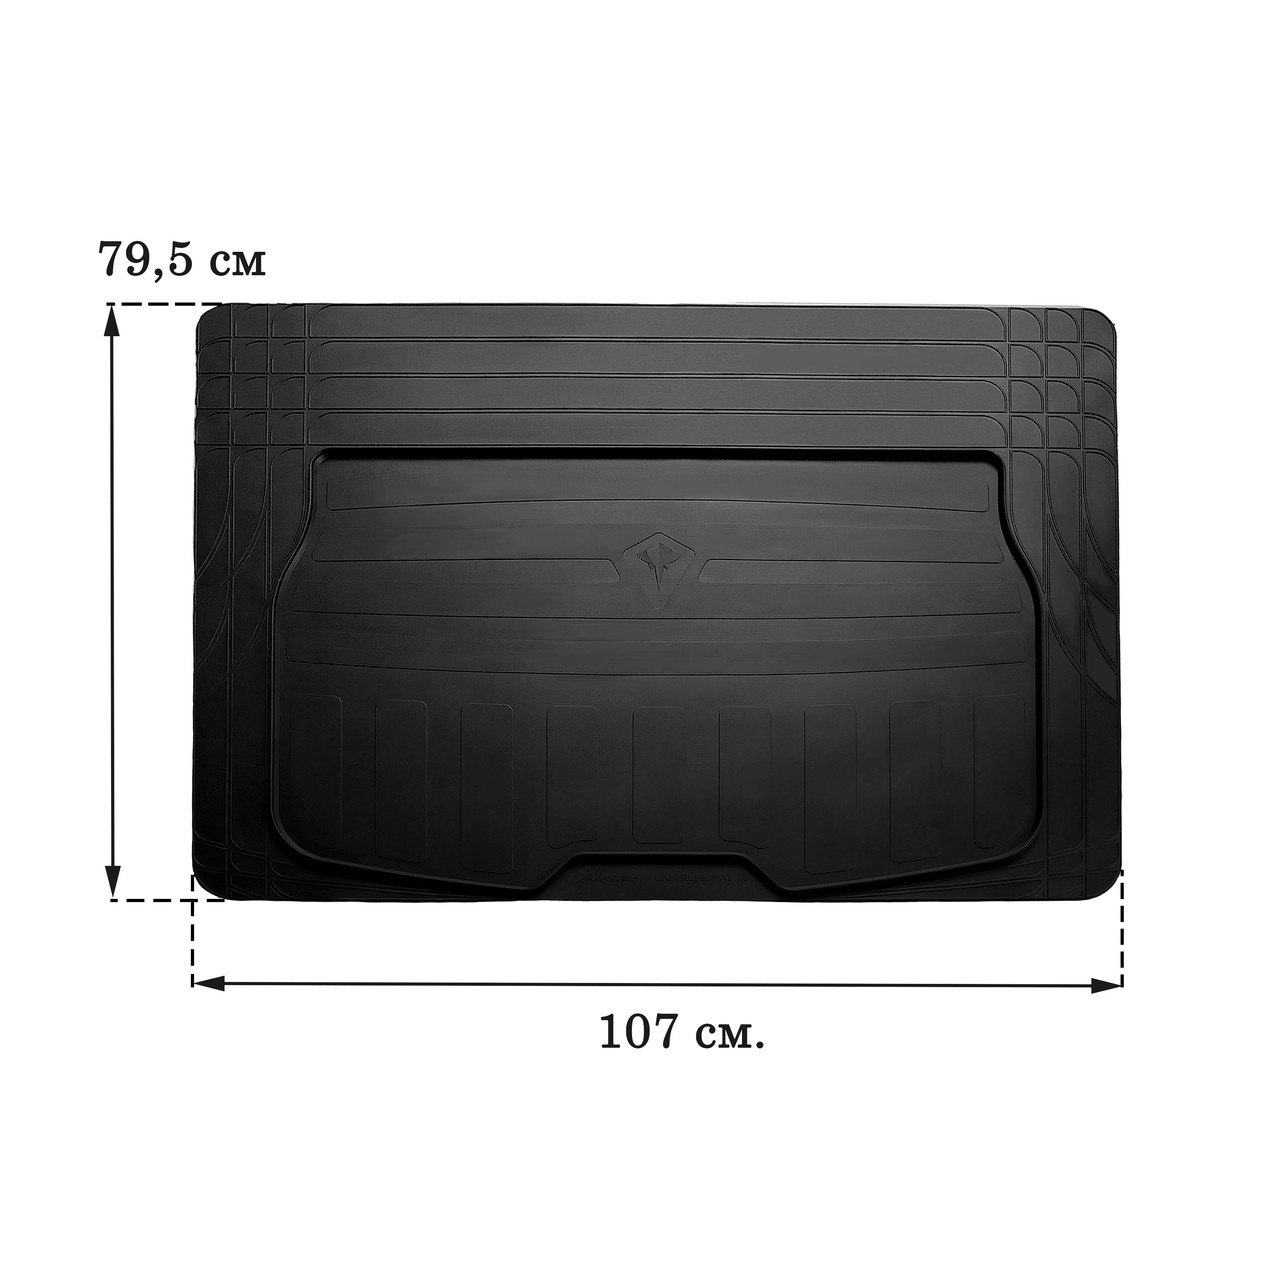 Килимок в багажник Універсальний "XS" (107смх79,5см) (Stingray)